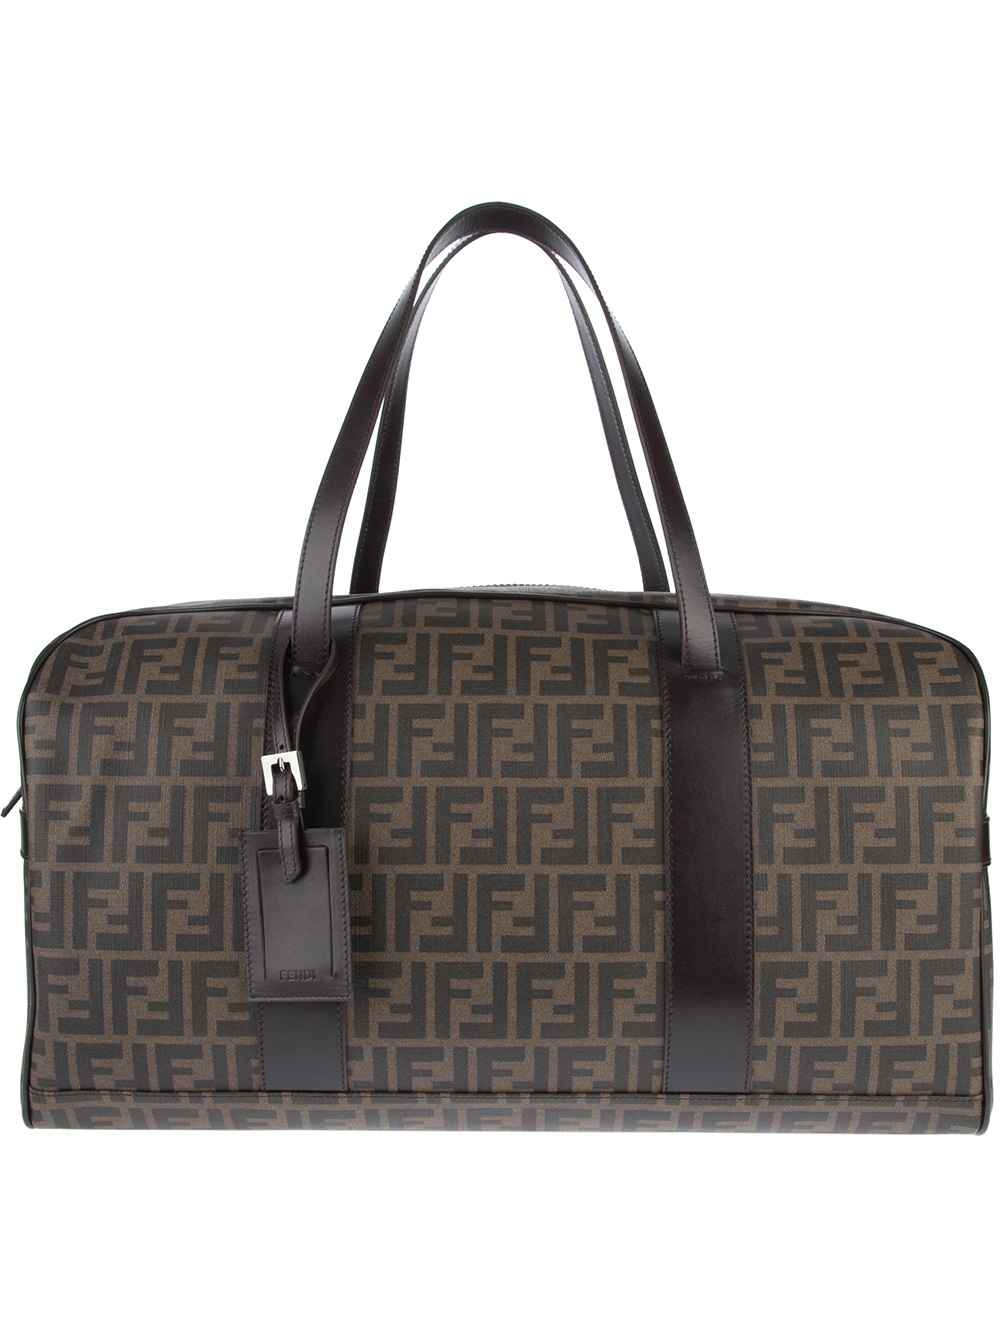 Lyst - Fendi 'zucca' Weekender Bag in Brown for Men